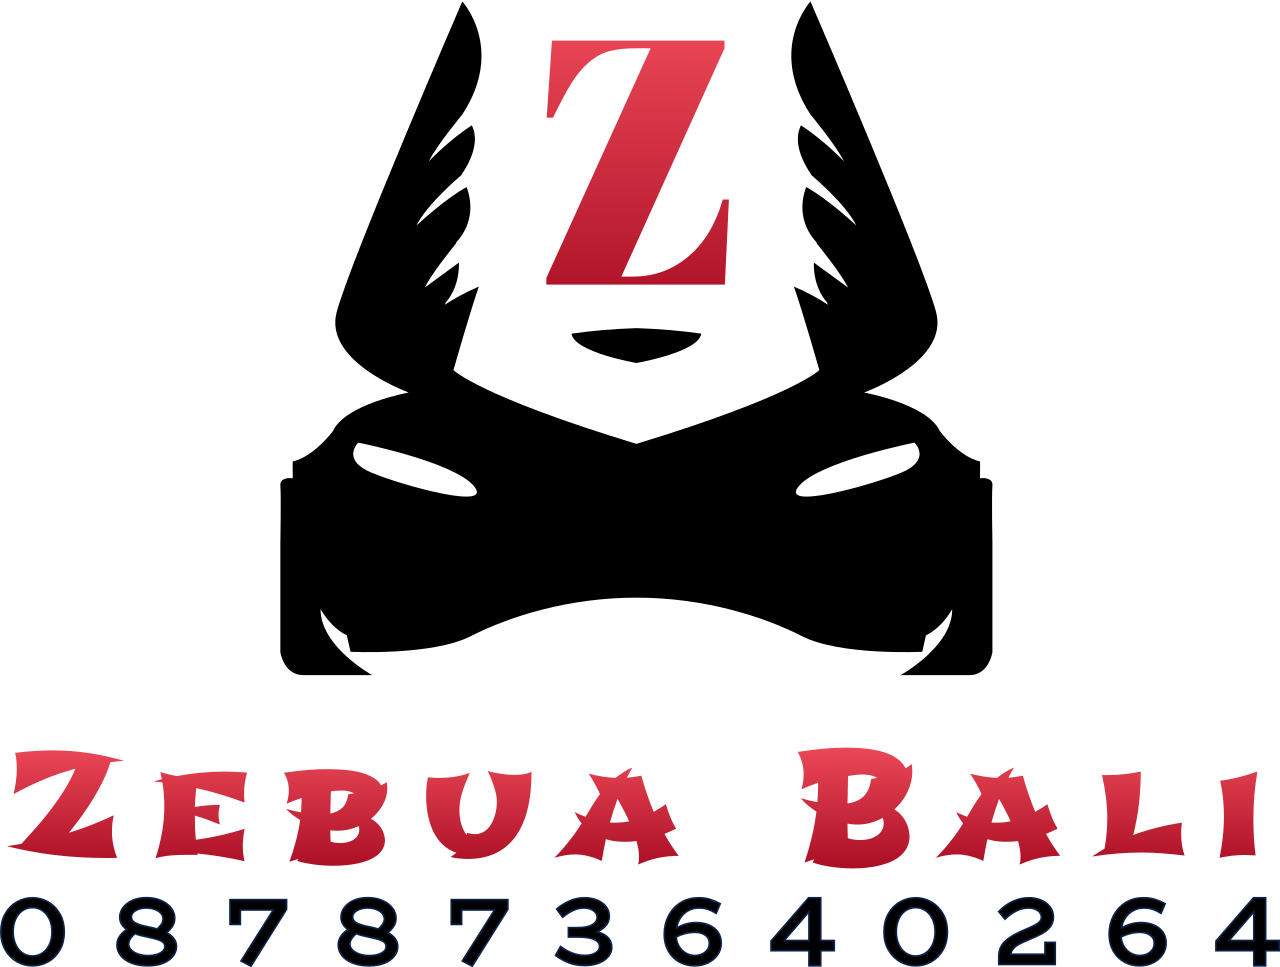 Zebua Bali's web page